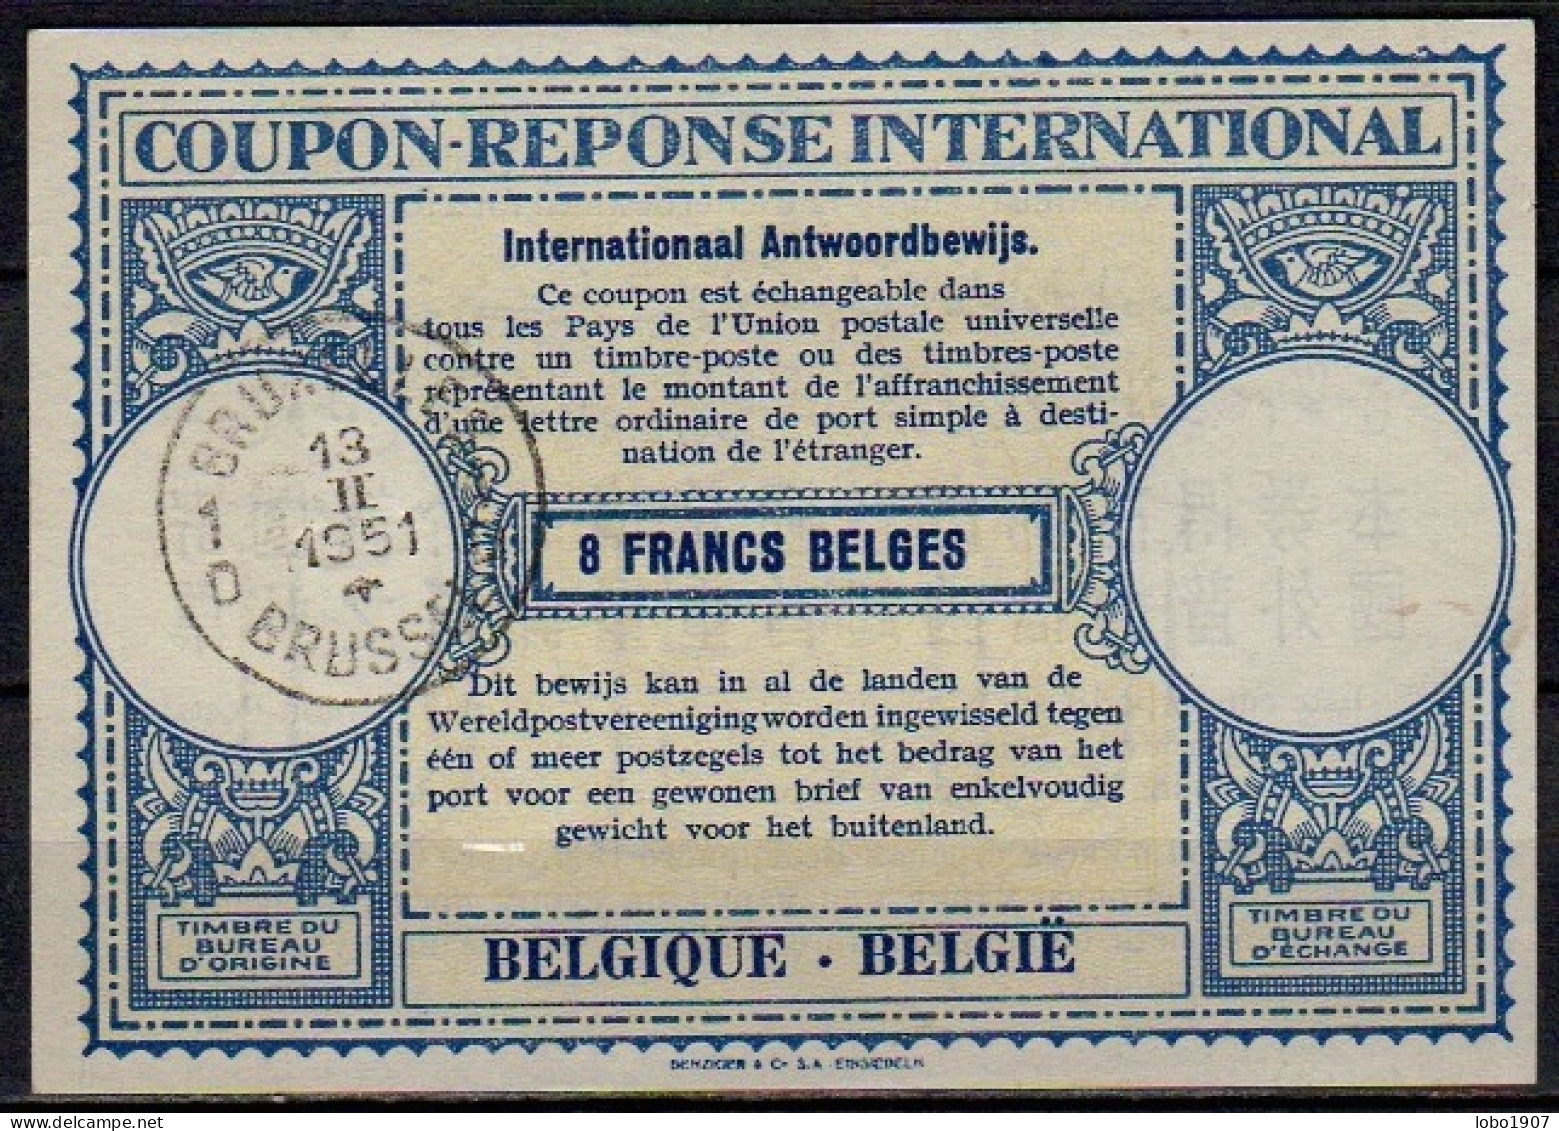 BELGIQUE BELGIE BELGIUM 1951, Lo15  8 FRANCS BELGES International Reply Coupon Reponse Antwortschein IAS IRC  O BRUXELLE - Internationale Antwortscheine